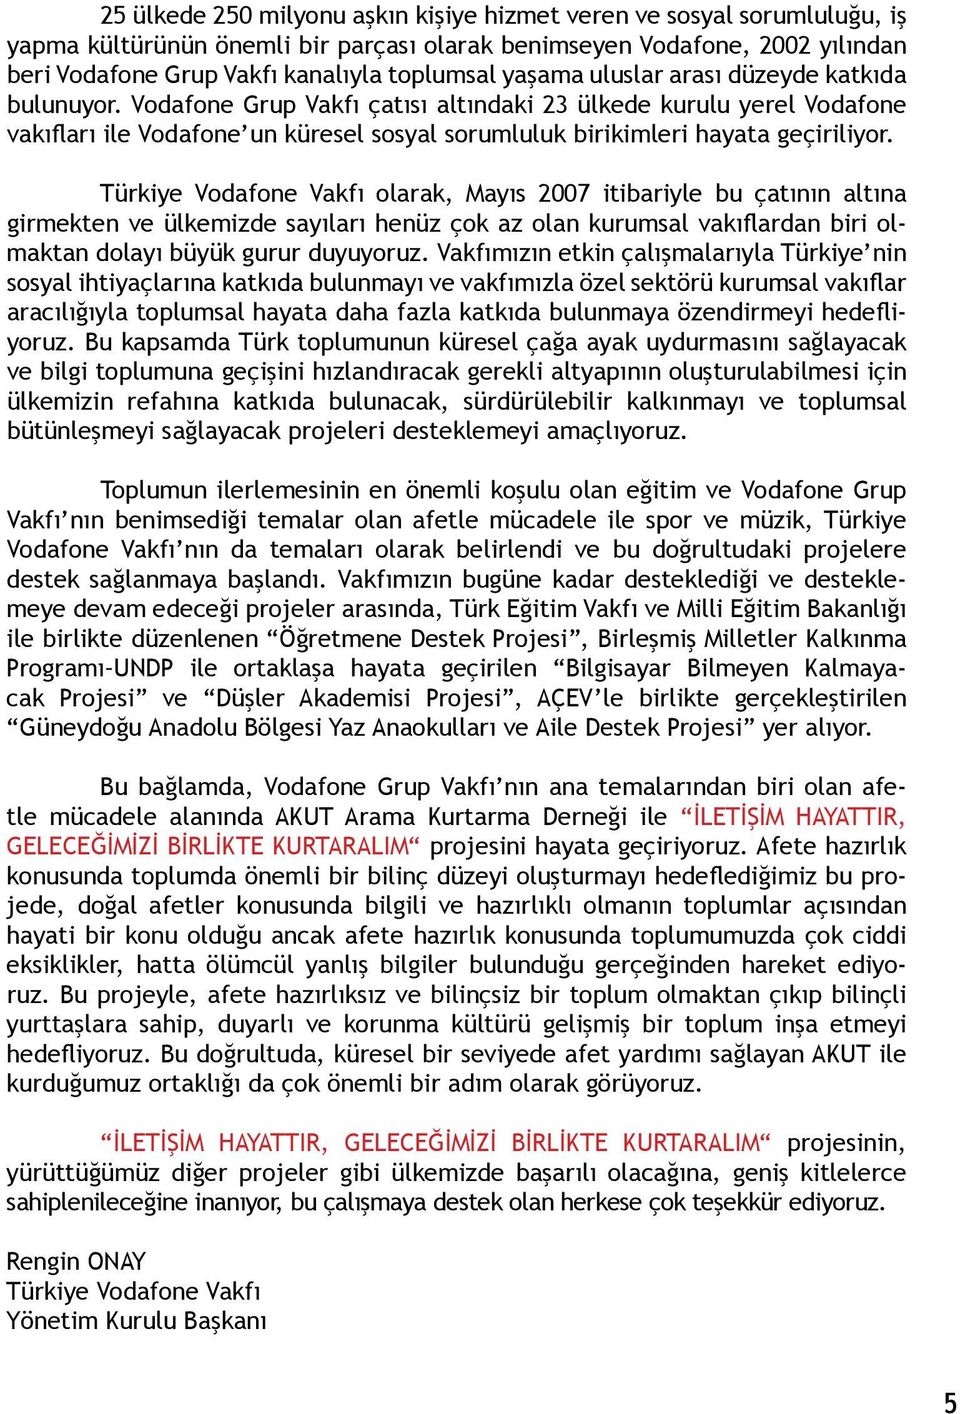 Türkiye Vodafone Vakfı olarak, Mayıs 2007 itibariyle bu çatının altına girmekten ve ülkemizde sayıları henüz çok az olan kurumsal vakıflardan biri olmaktan dolayı büyük gurur duyuyoruz.